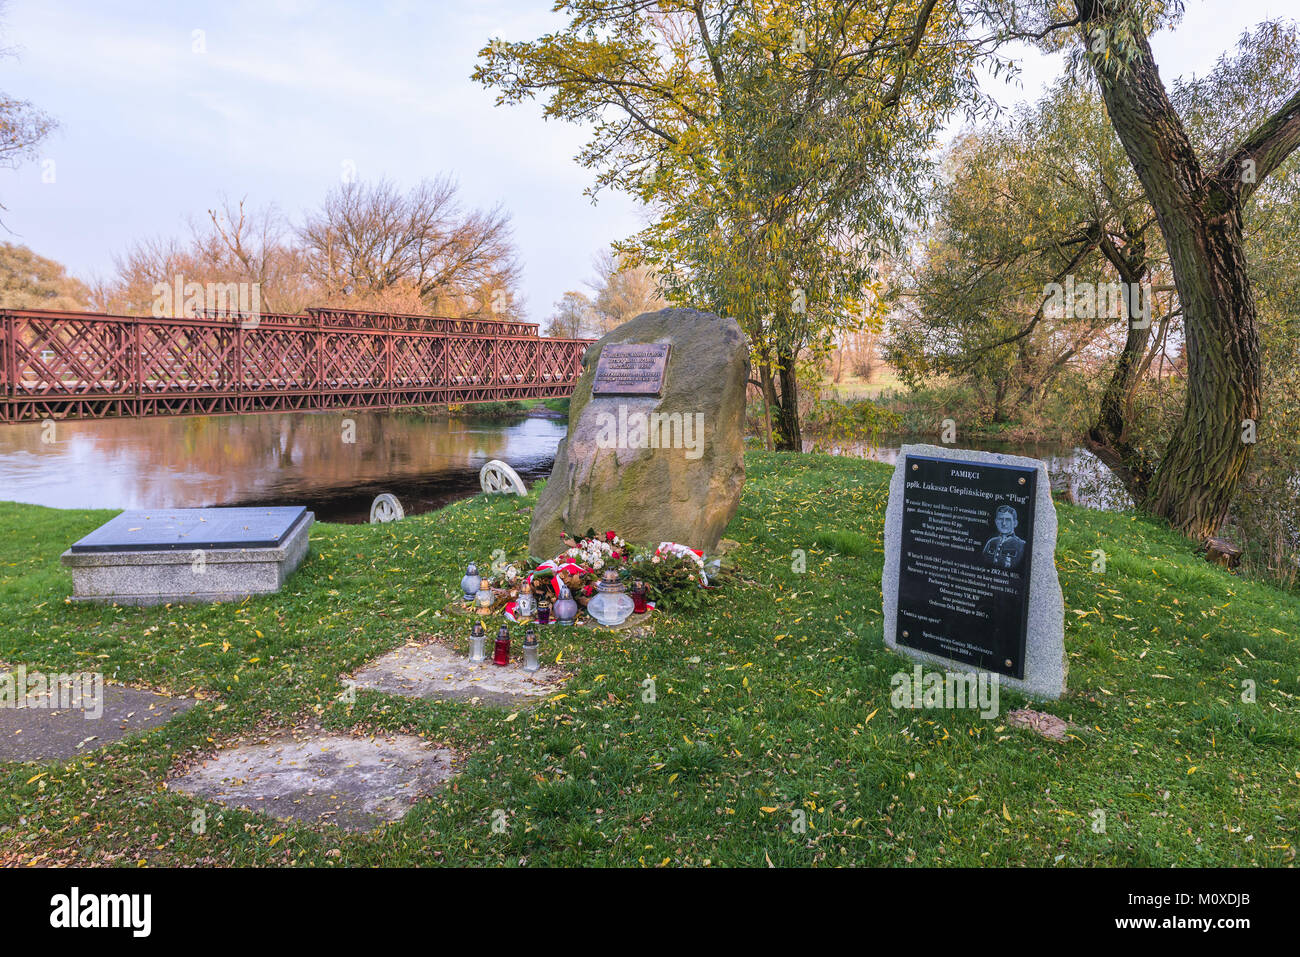 Gedenkstein der Schlacht an der Bzura Fluss der deutschen Invasion 1938 von Polen im Witkowice Dorf, Sochaczew County in der Provinz Pommern/Ostsee Polen Stockfoto